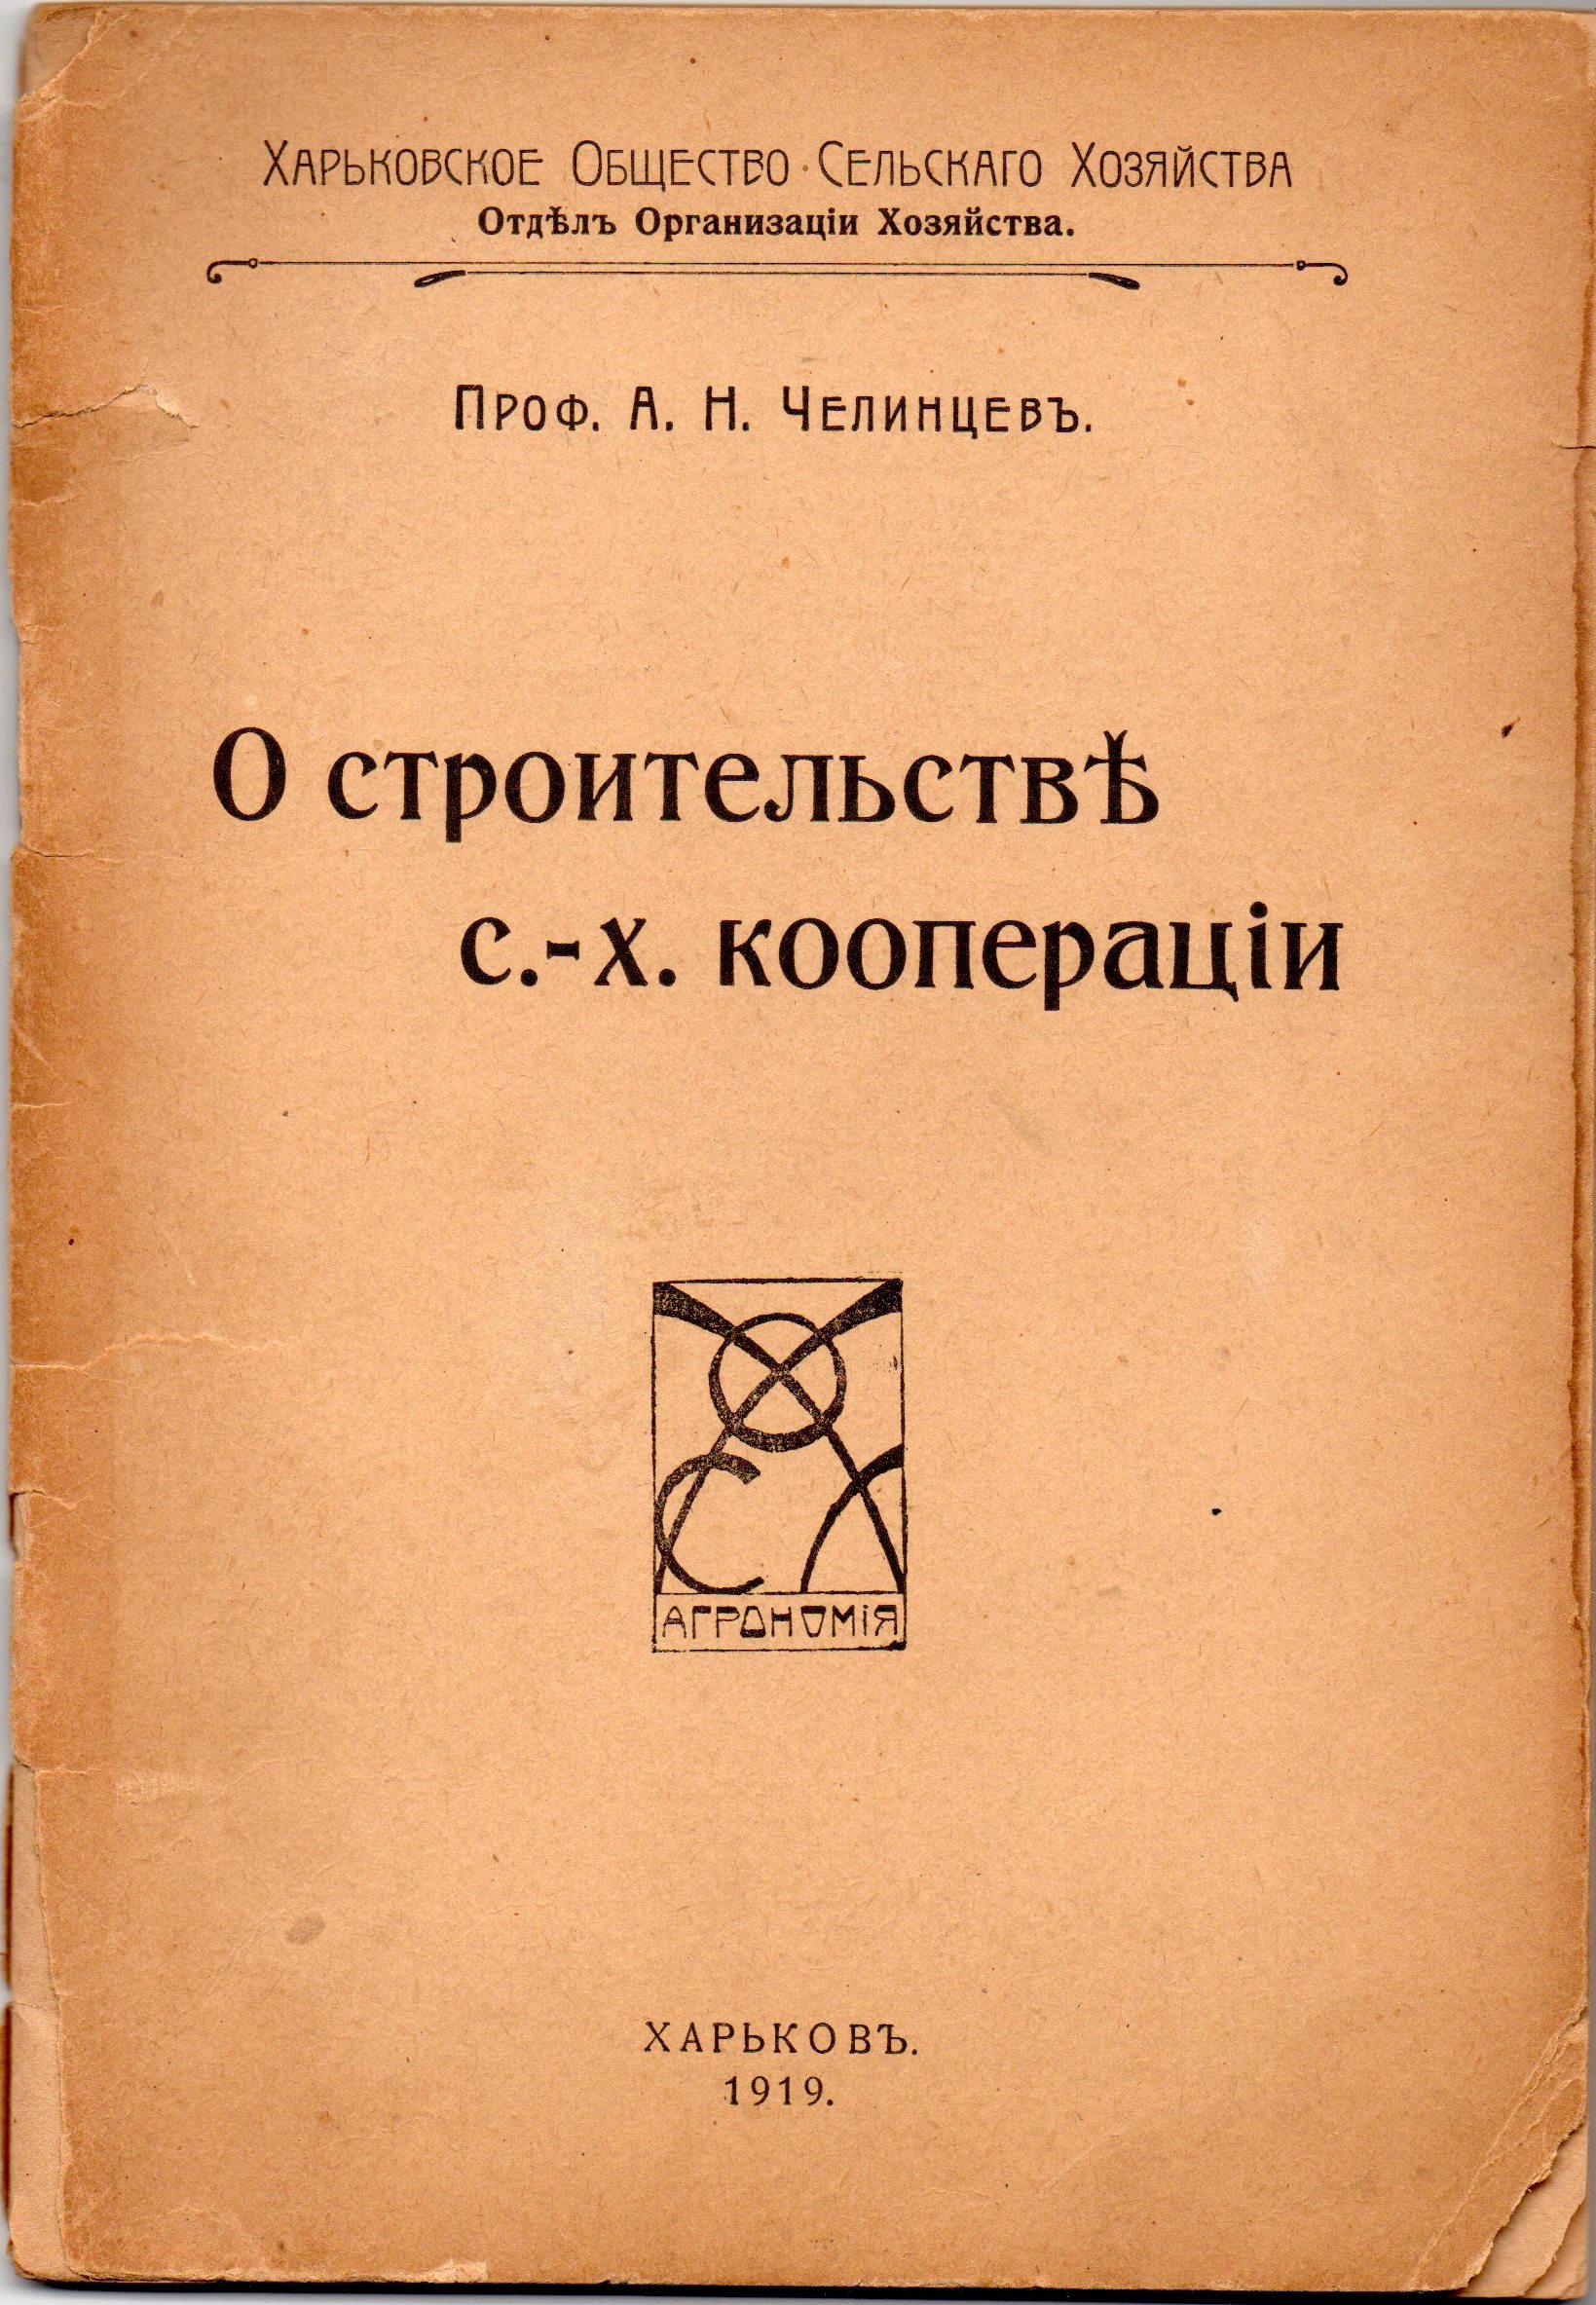 Книга "Челинцевъ А. Н. "О строительствѢ с.-х. коопераціи"